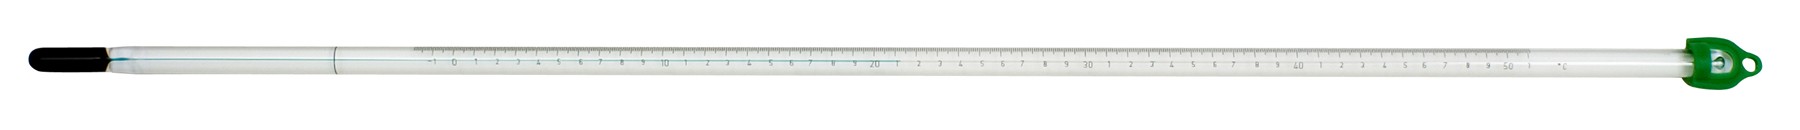 H-B DURAC, Liquid-In-Glass Wall Thermometer; Organic Liquid Fill